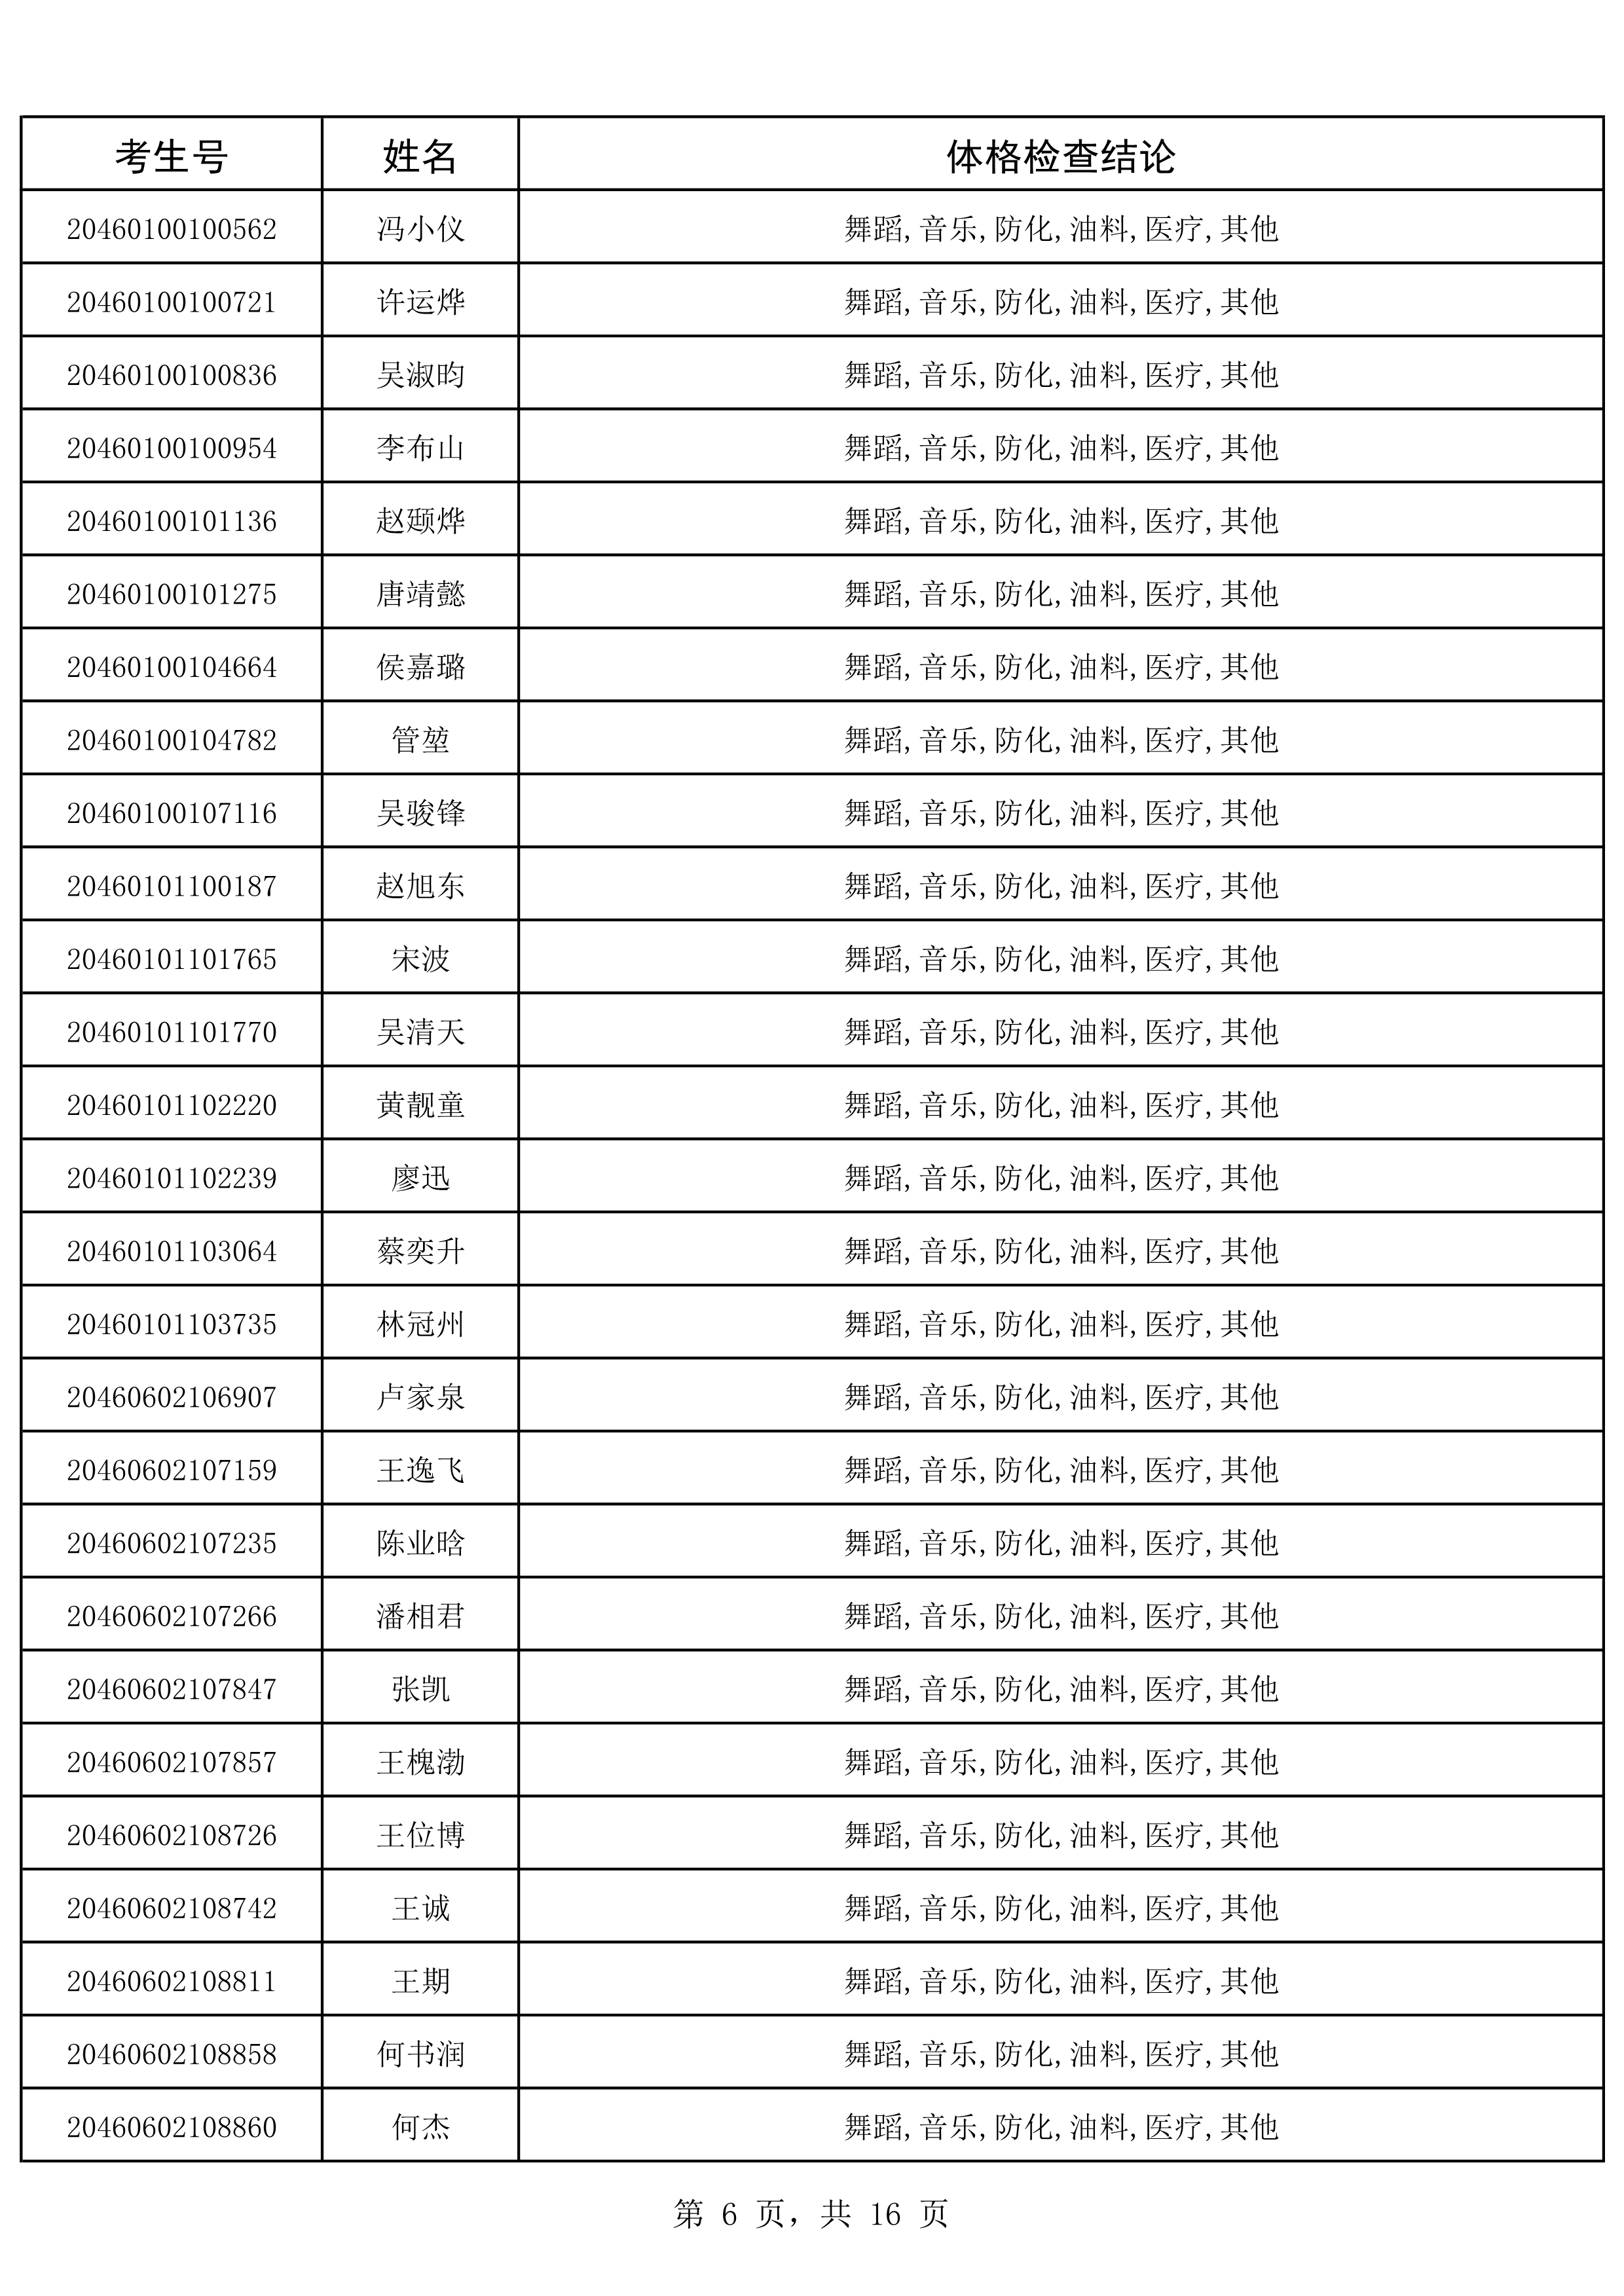 2020年海南省军队院校招生政治考核、军检合格考生名单_6.png